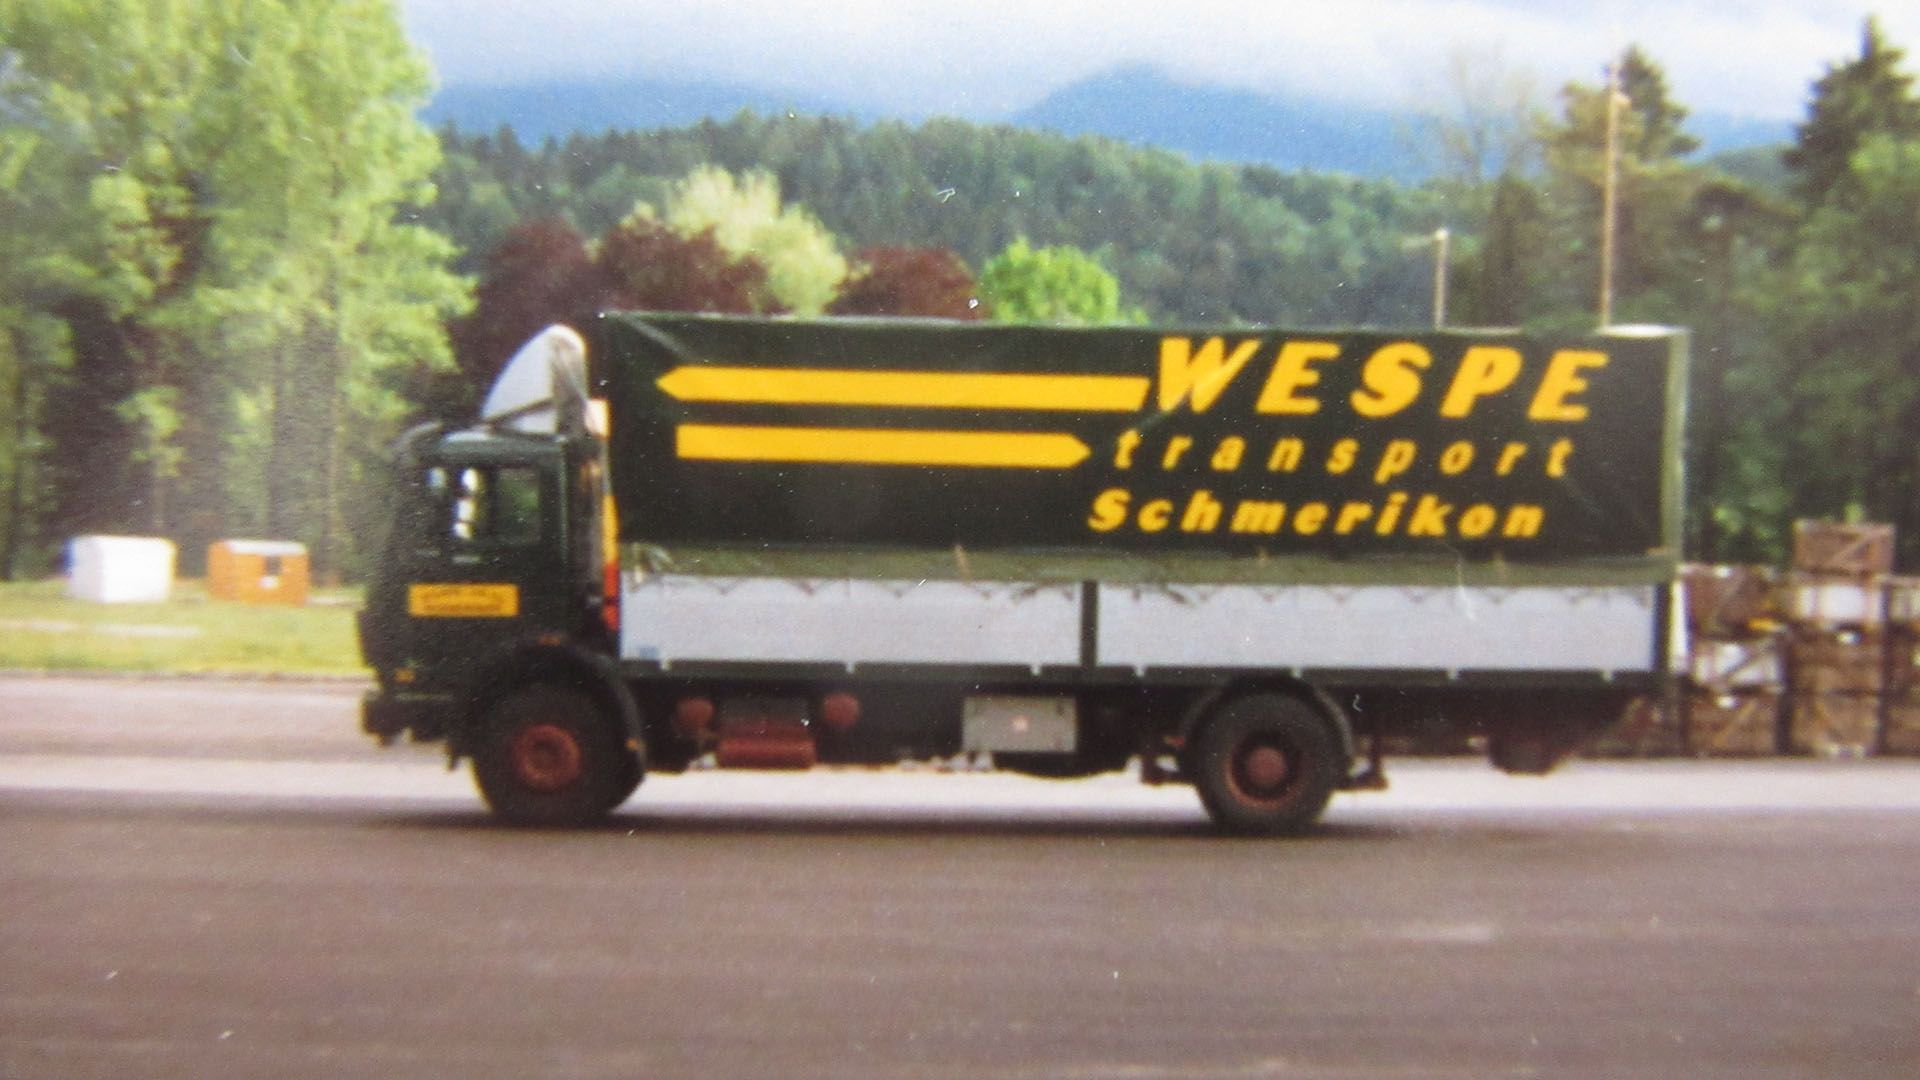 Bild eines alten Wespe-LKW